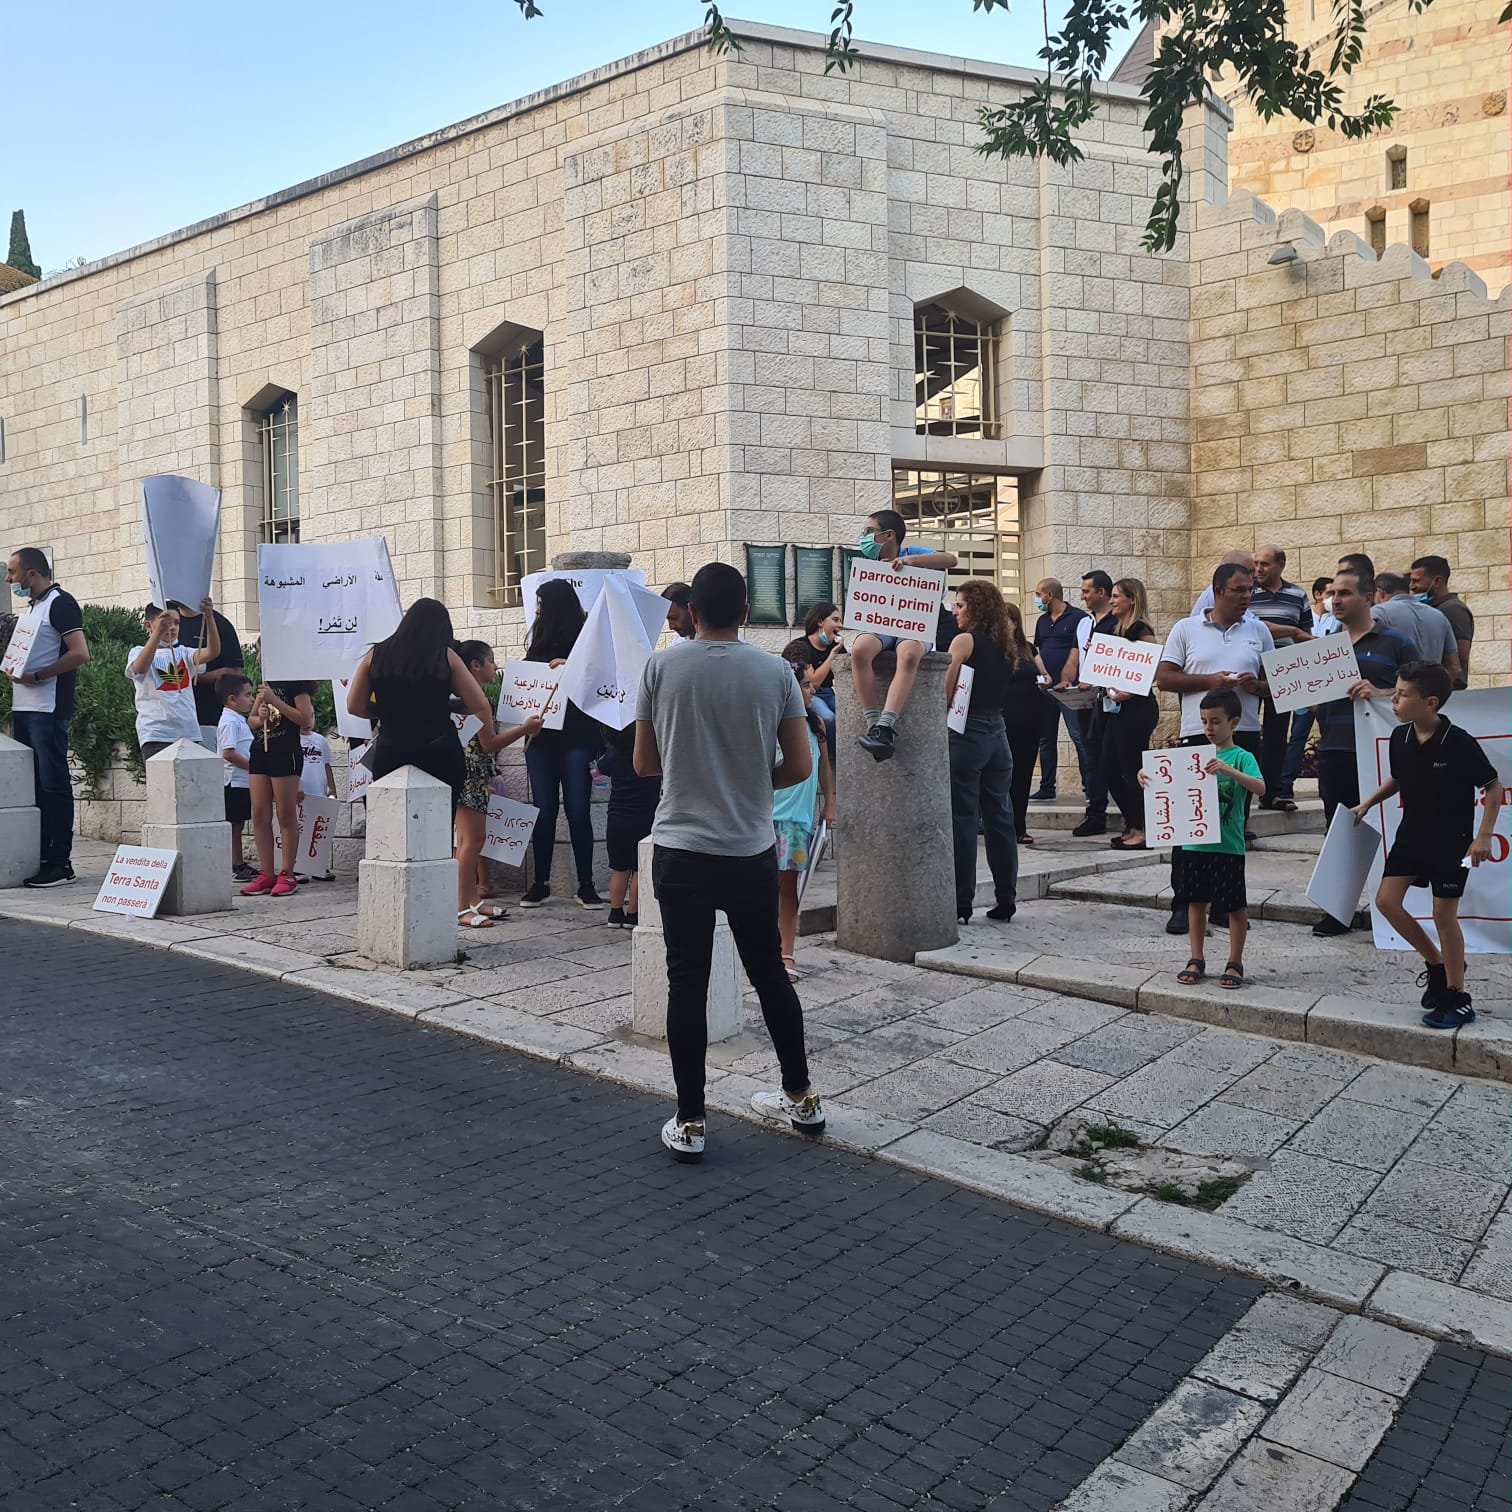 مباشر، الناصرة: مسيرة شموع وتظاهرة احتجاجية ضد صفقات بيع الاراضي بعنوان "ارض البشارة مش للتجارة"-18